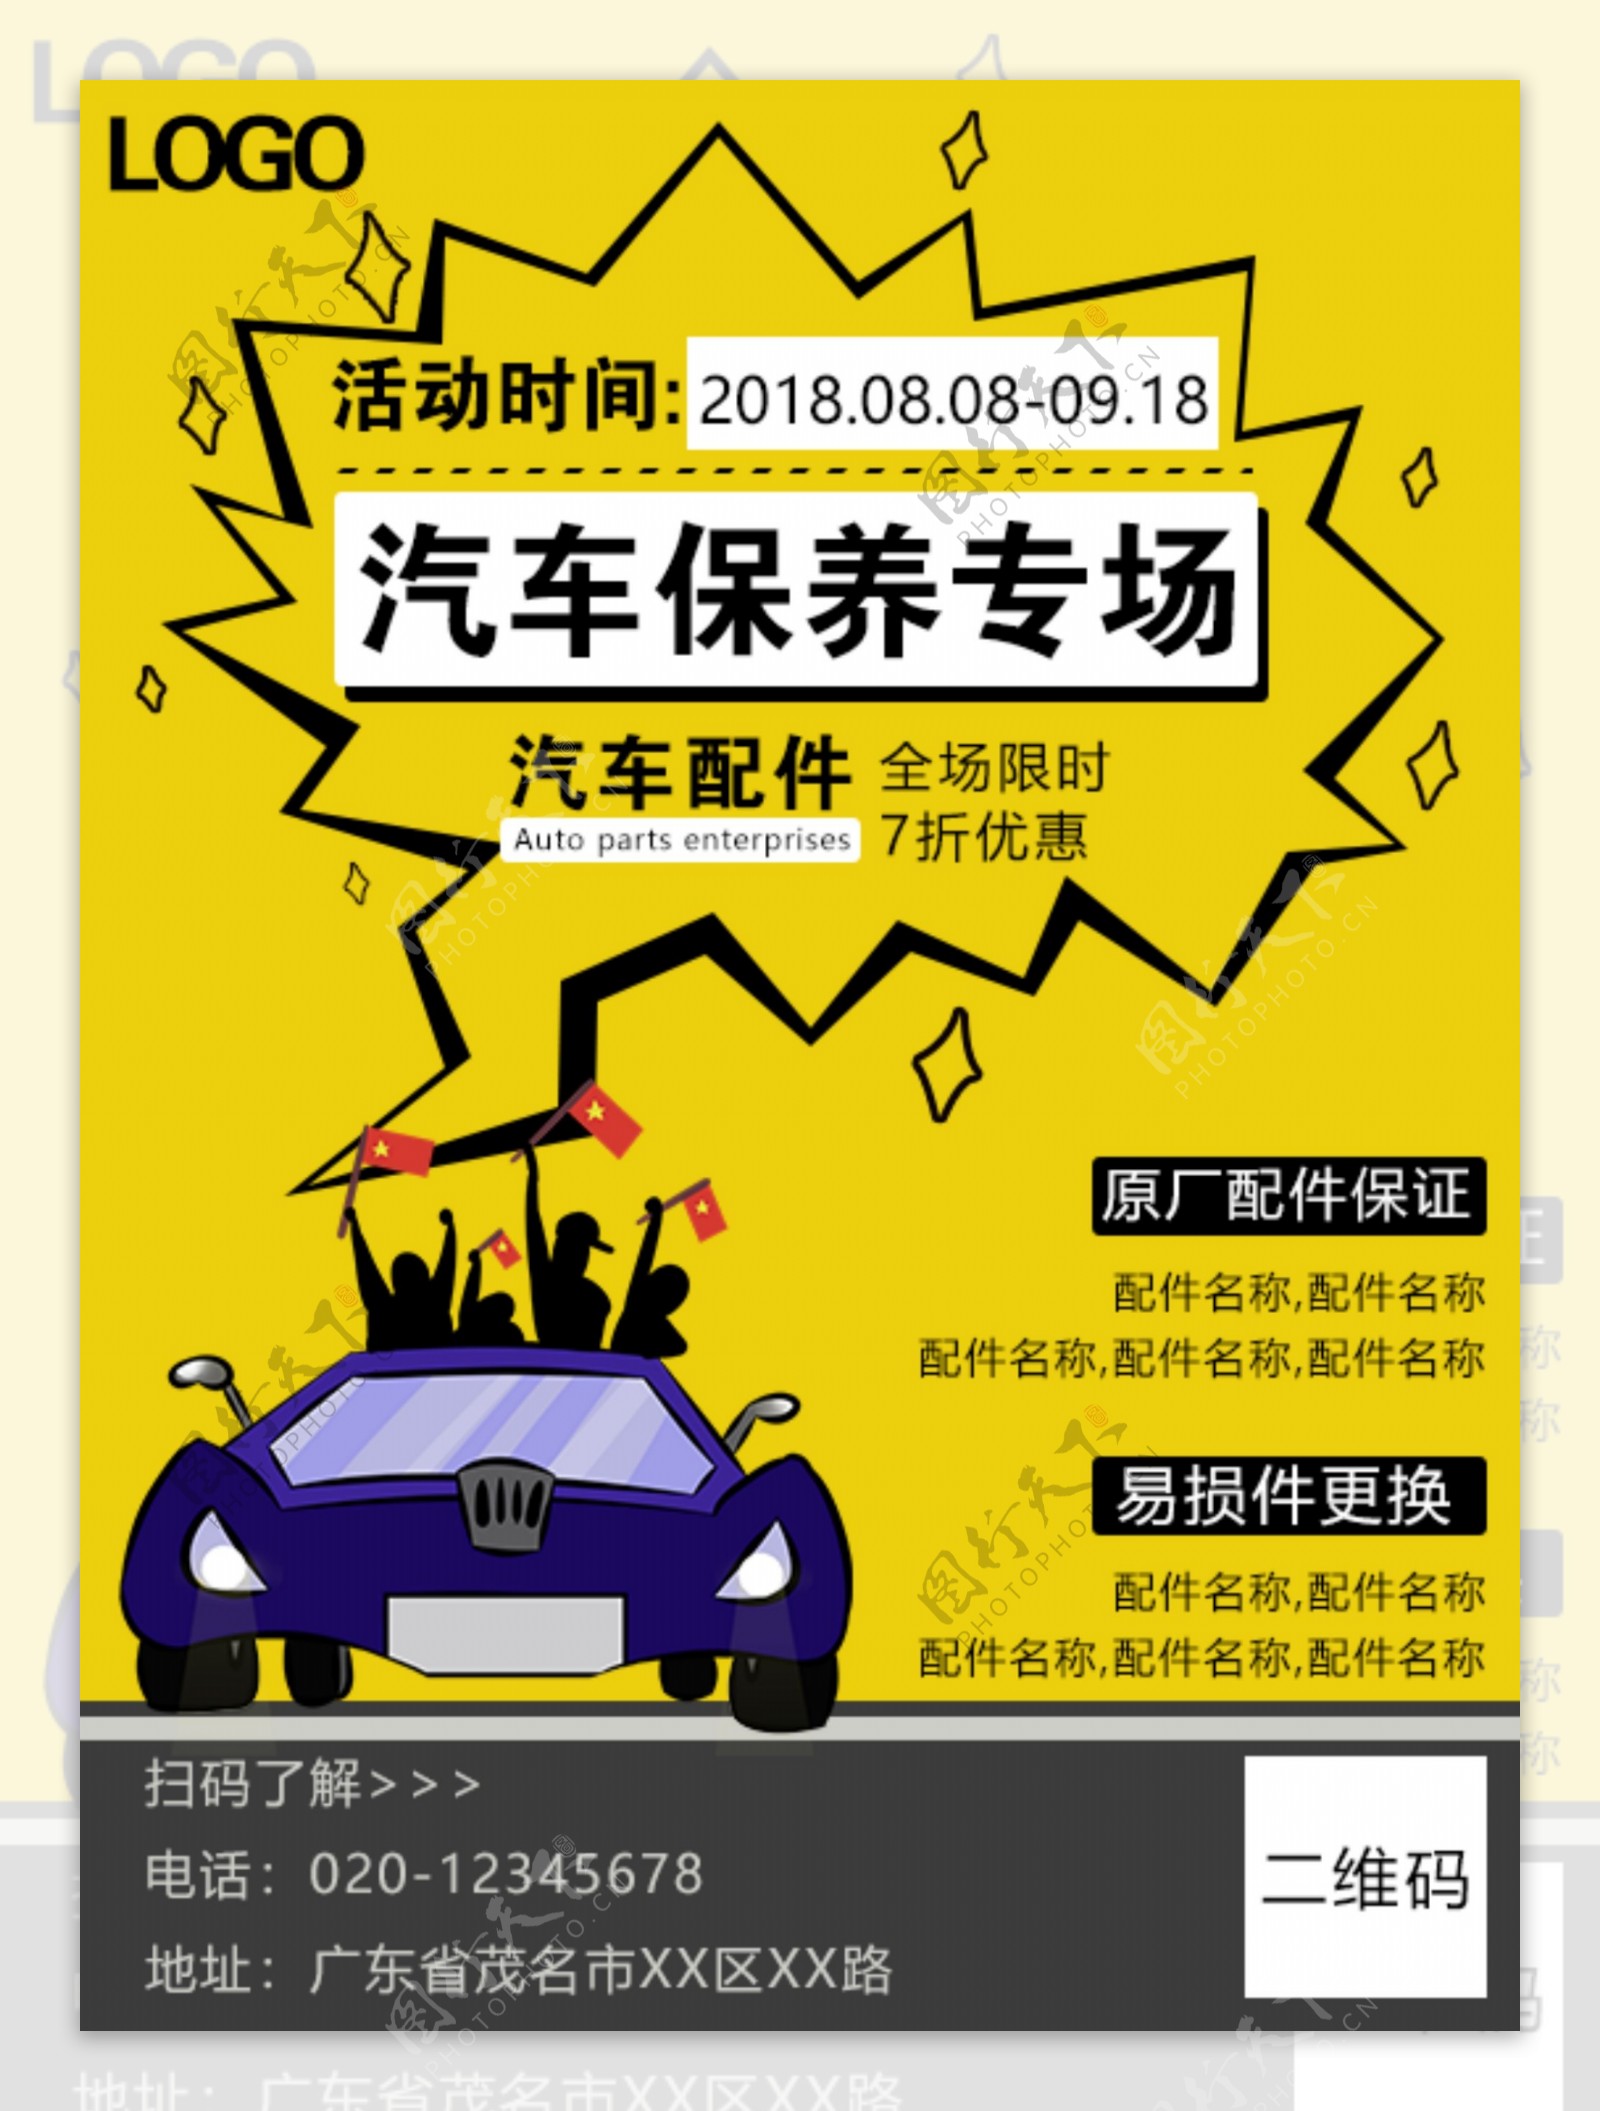 汽车保养活动海报广告图